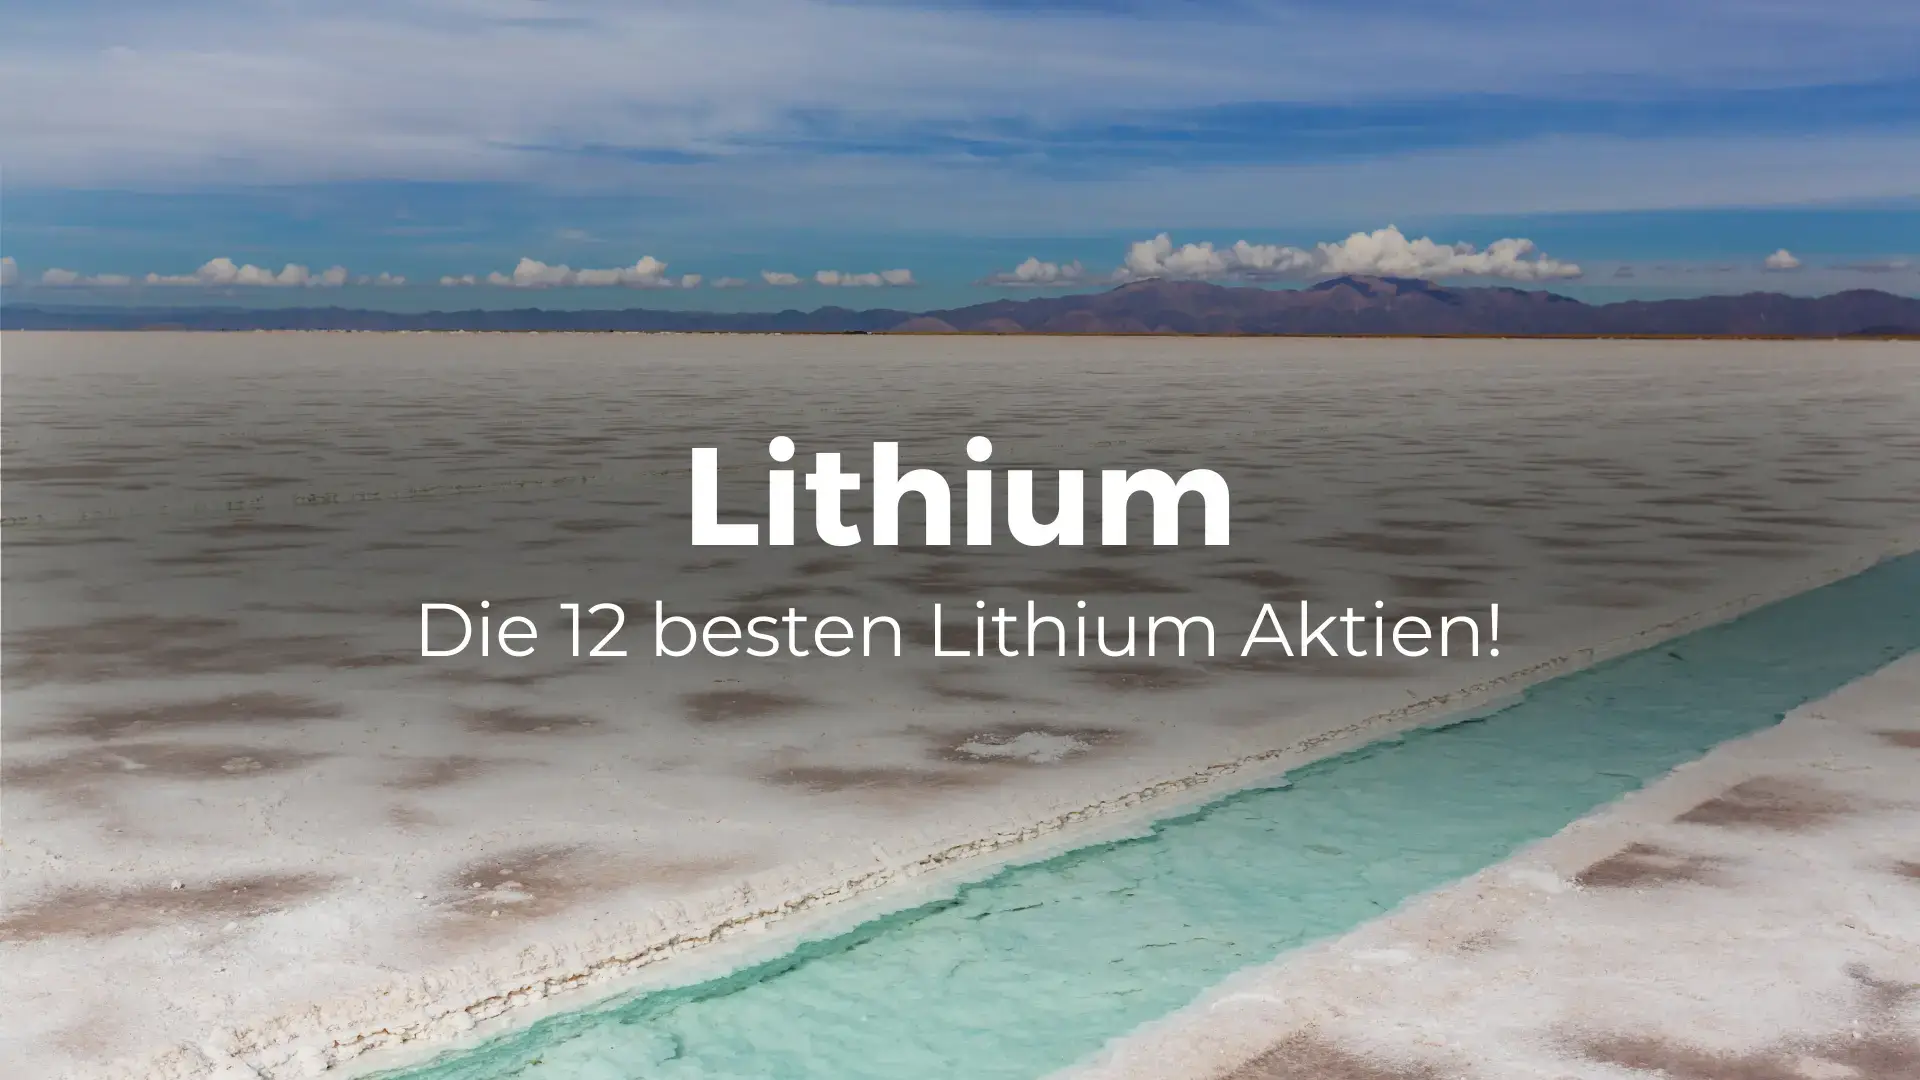 Beste Lithium Aktien weltweit